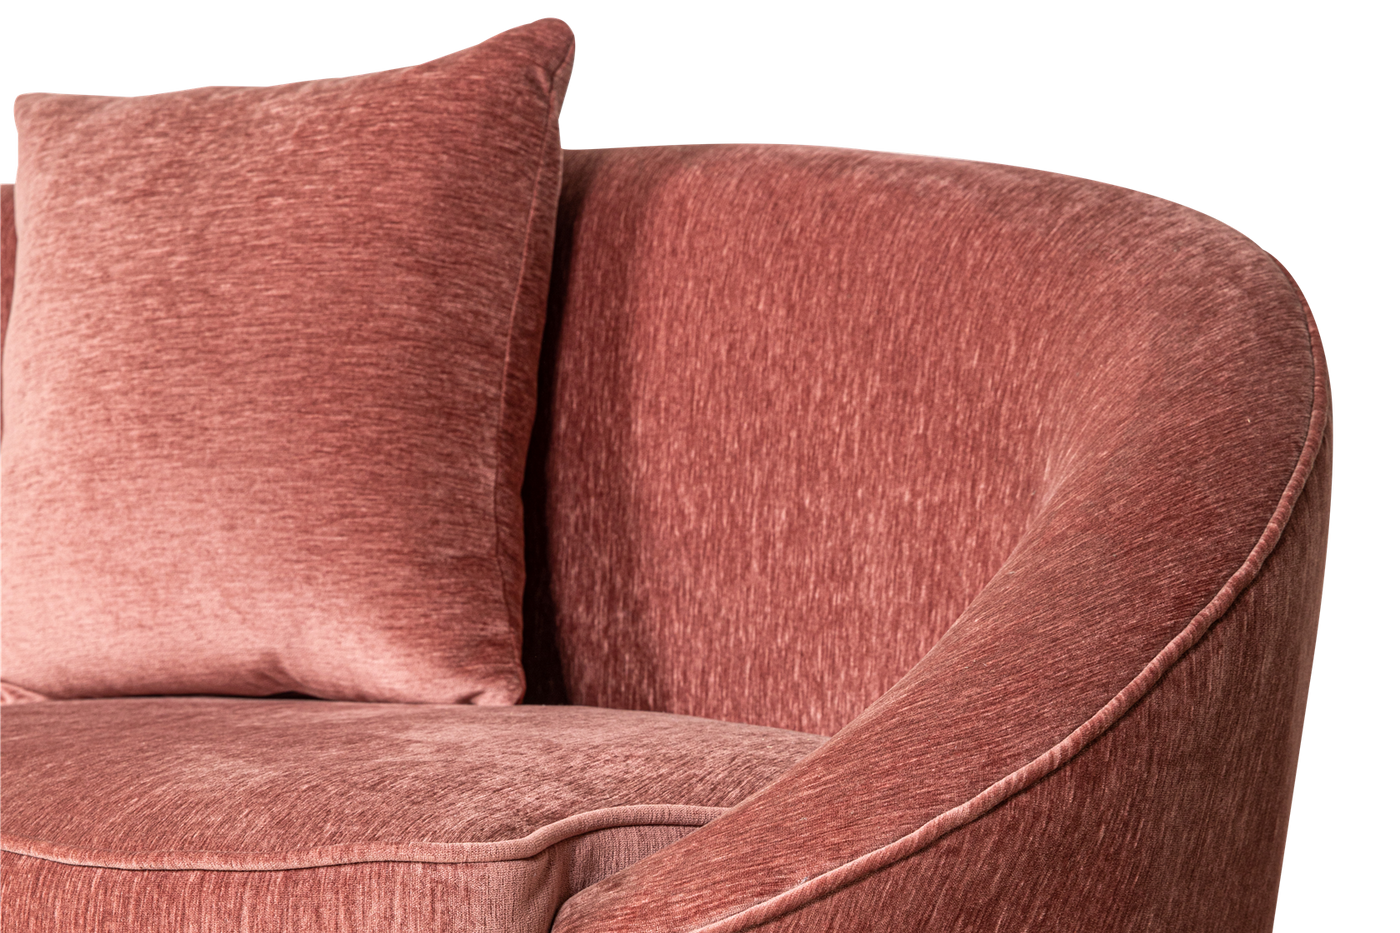 Marriott Sofa Pink - Future Classics Furniture